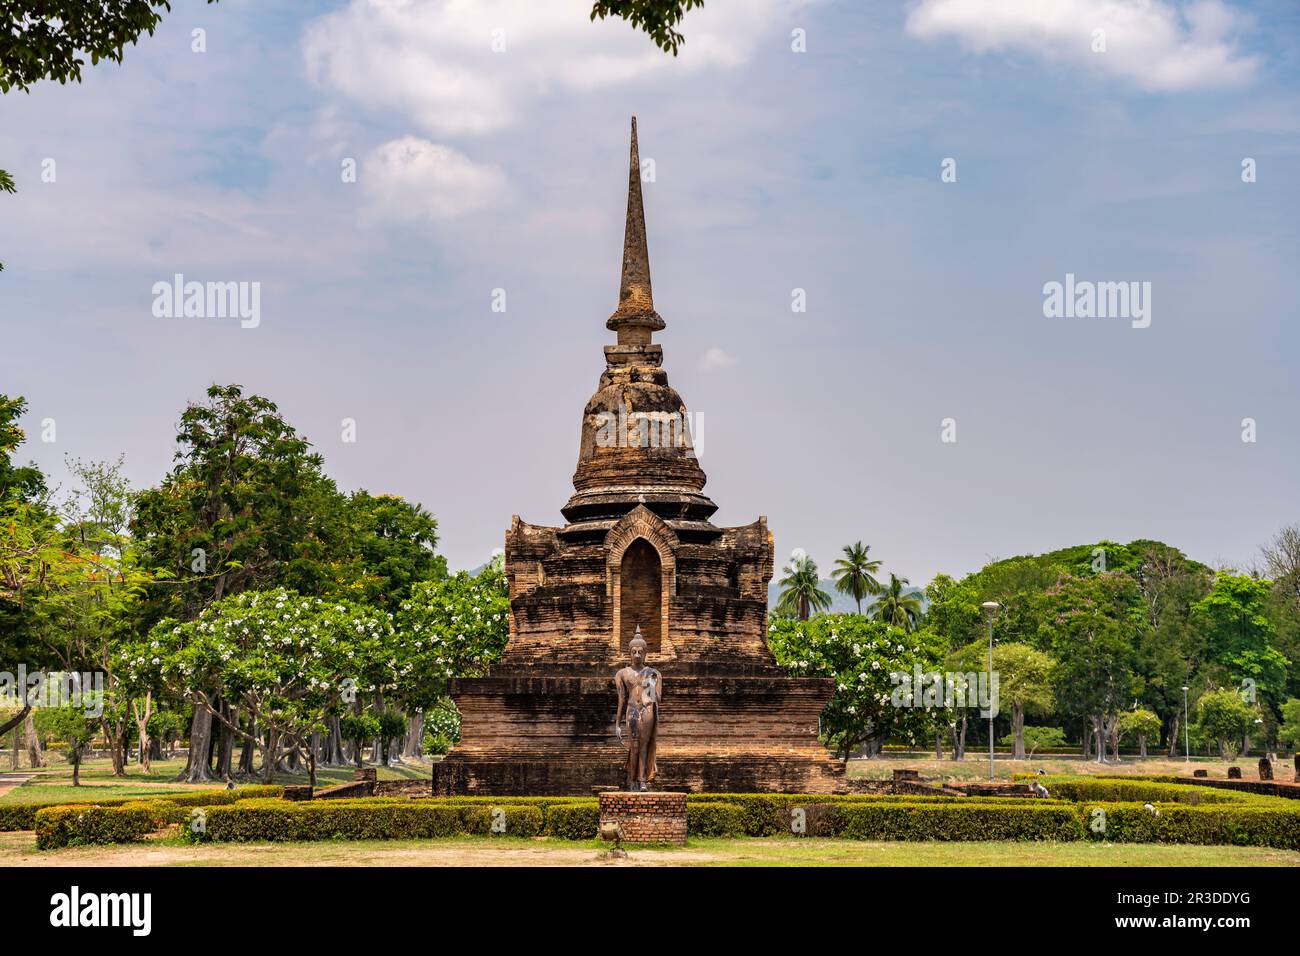 Buddha Statue und Chedi des buddhistischen Tempel Wat Sa Si, UNESCO Welterbe Geschichtspark Sukhothai, Thailand, Asien   |  Buddha statue and chedi of Stock Photo